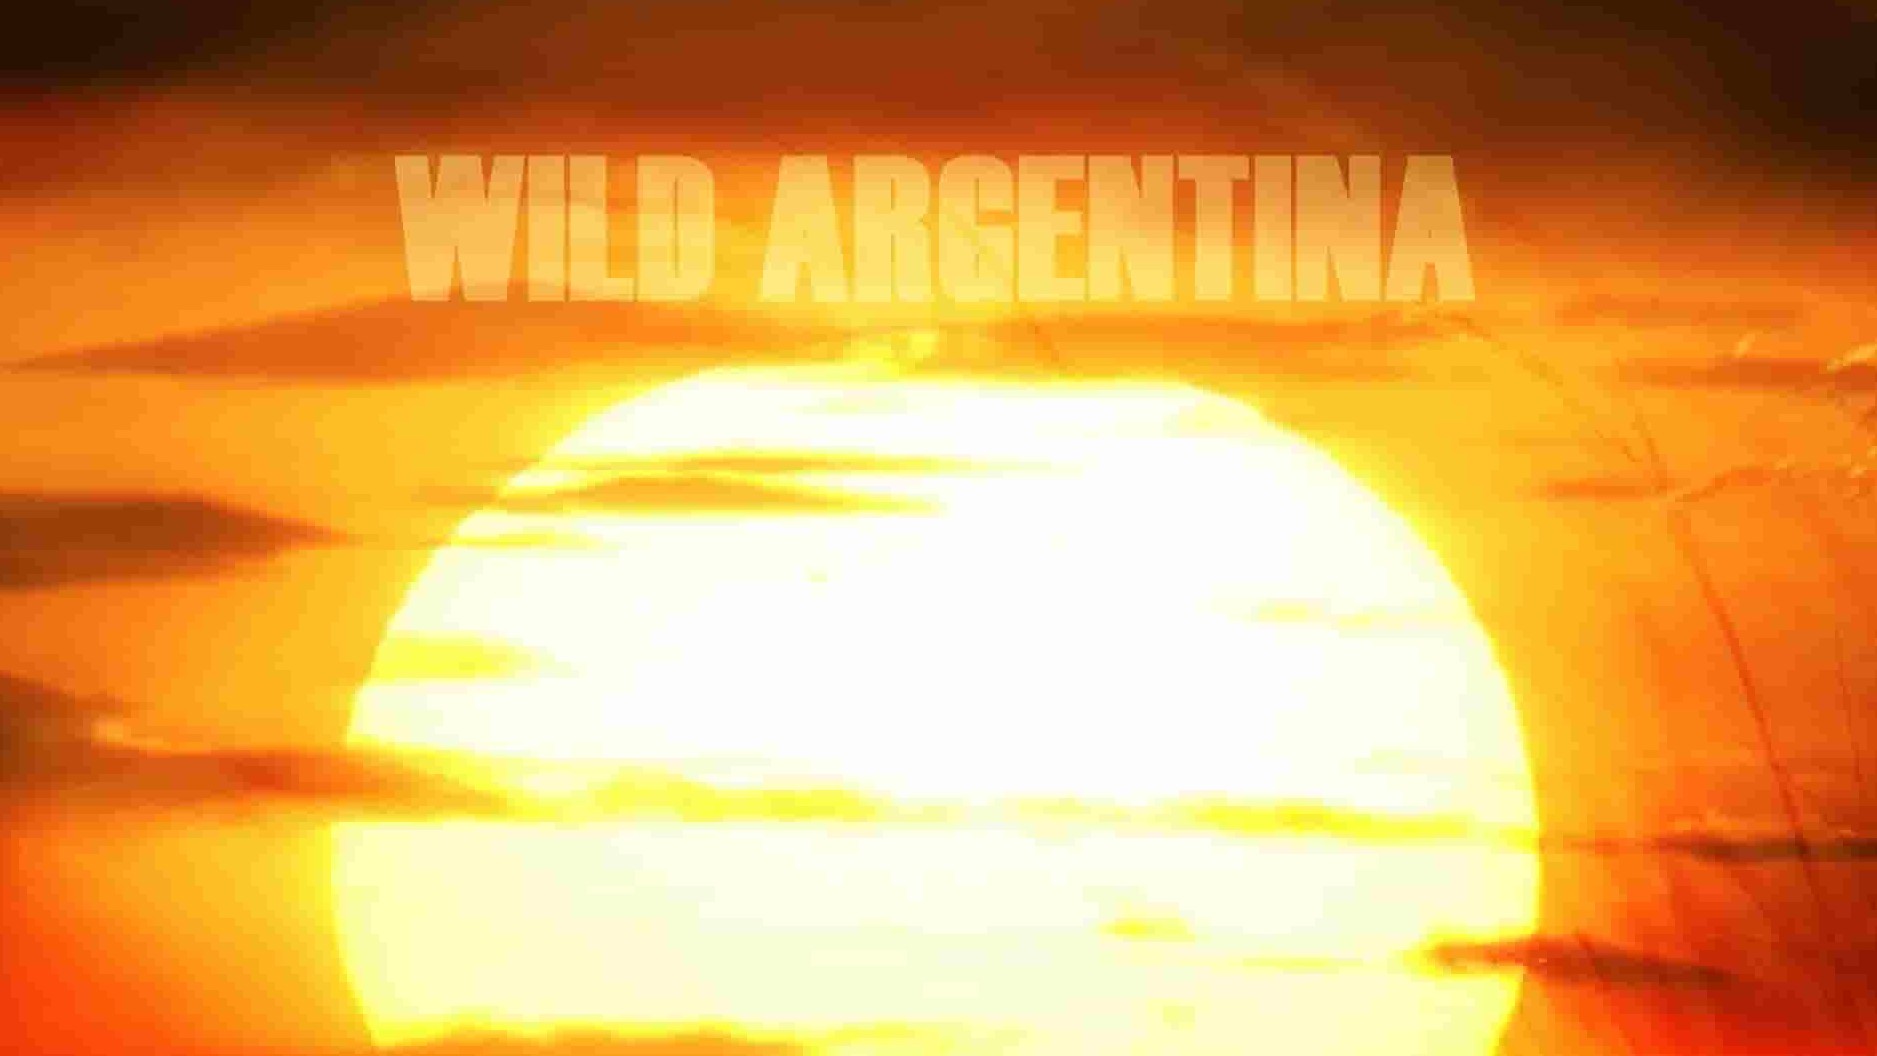 国家地理《野性阿根廷 Wild Argentina 2017》全3集 英语中英双字 1080P高清网盘下载